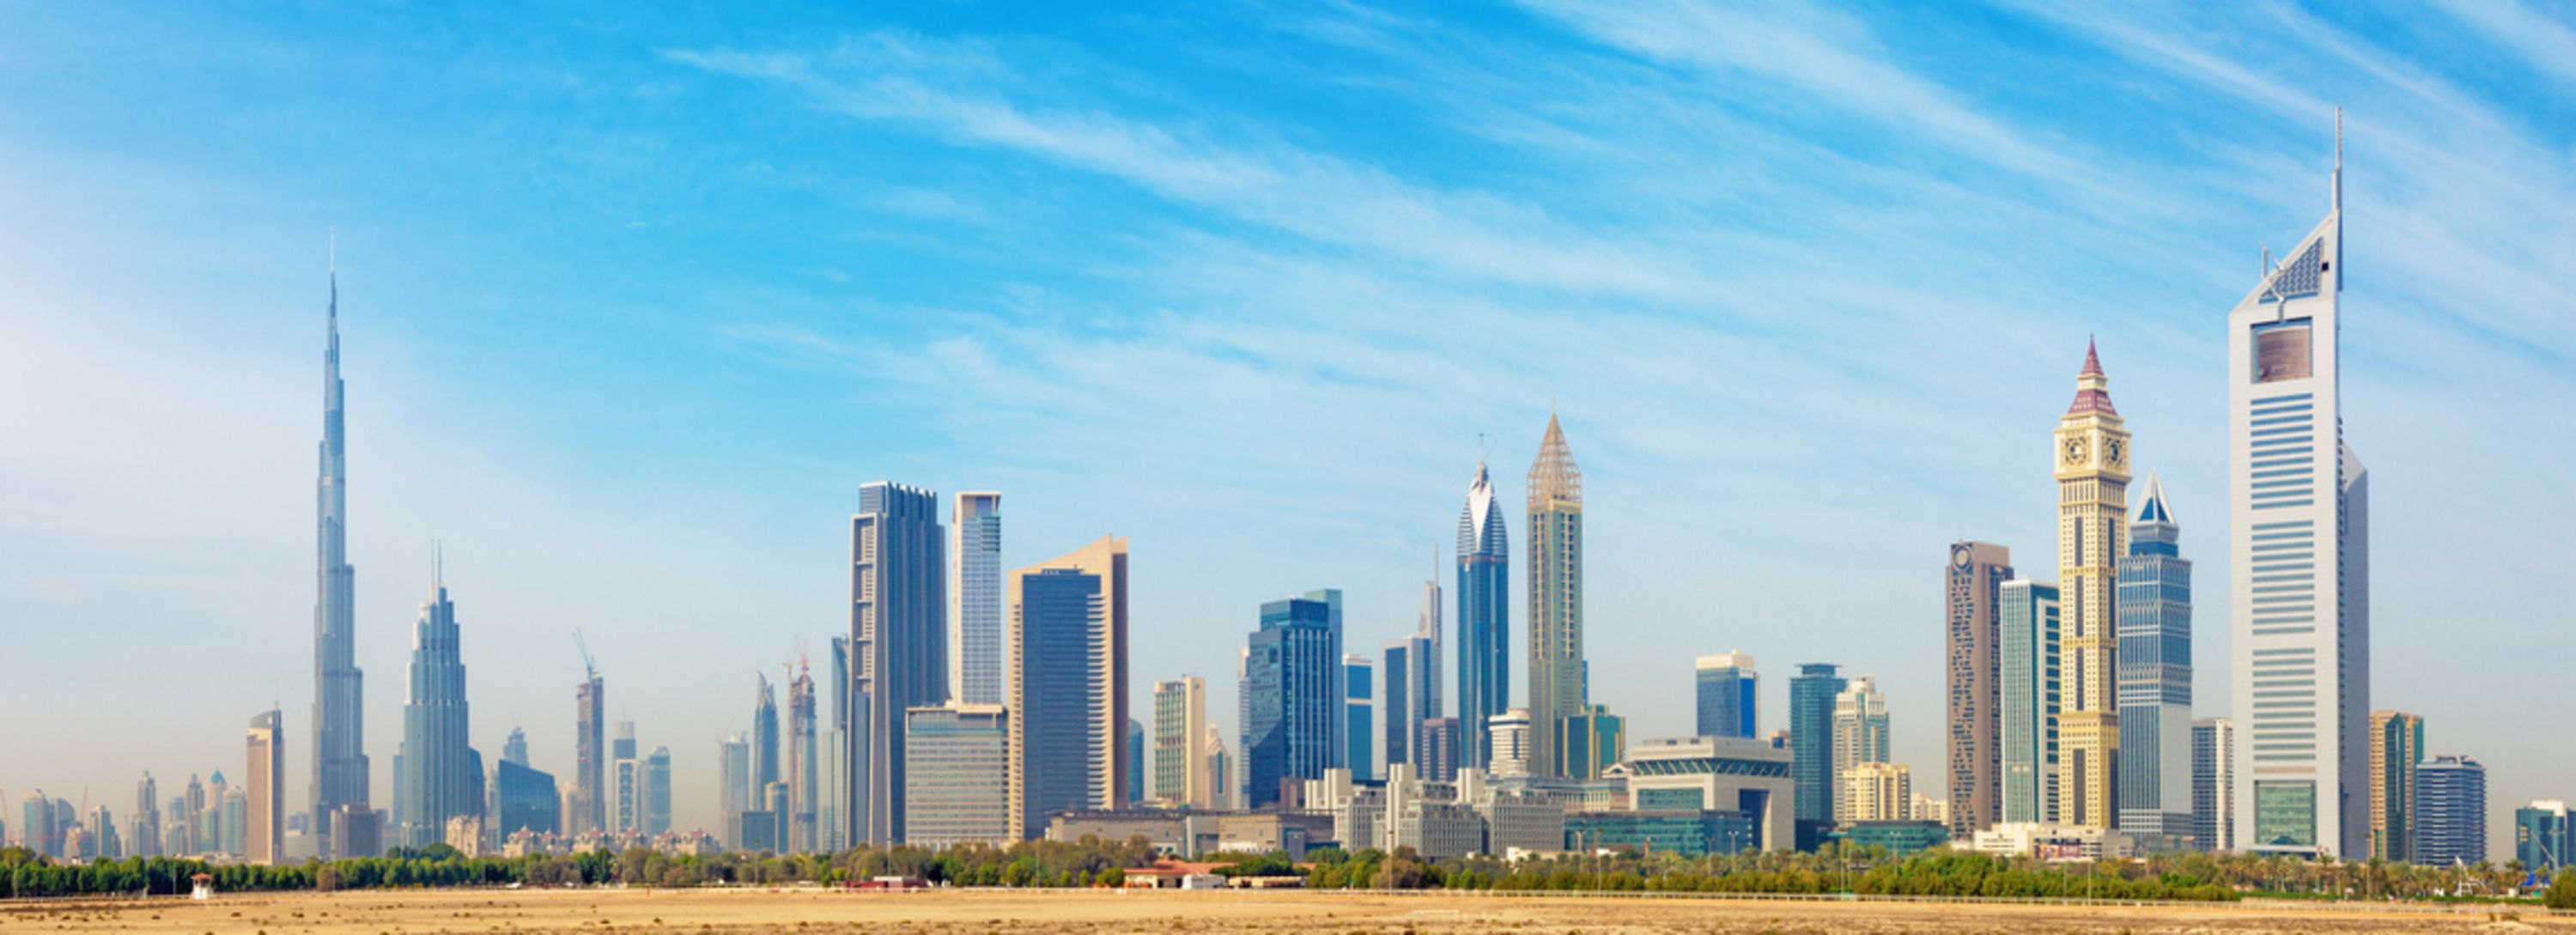 تعد مدينة دبي واحدة من أبرز وجهات السياحة في العالم، ورغم تميزها بالمعالم الحديثة والثقافة الفريدة.